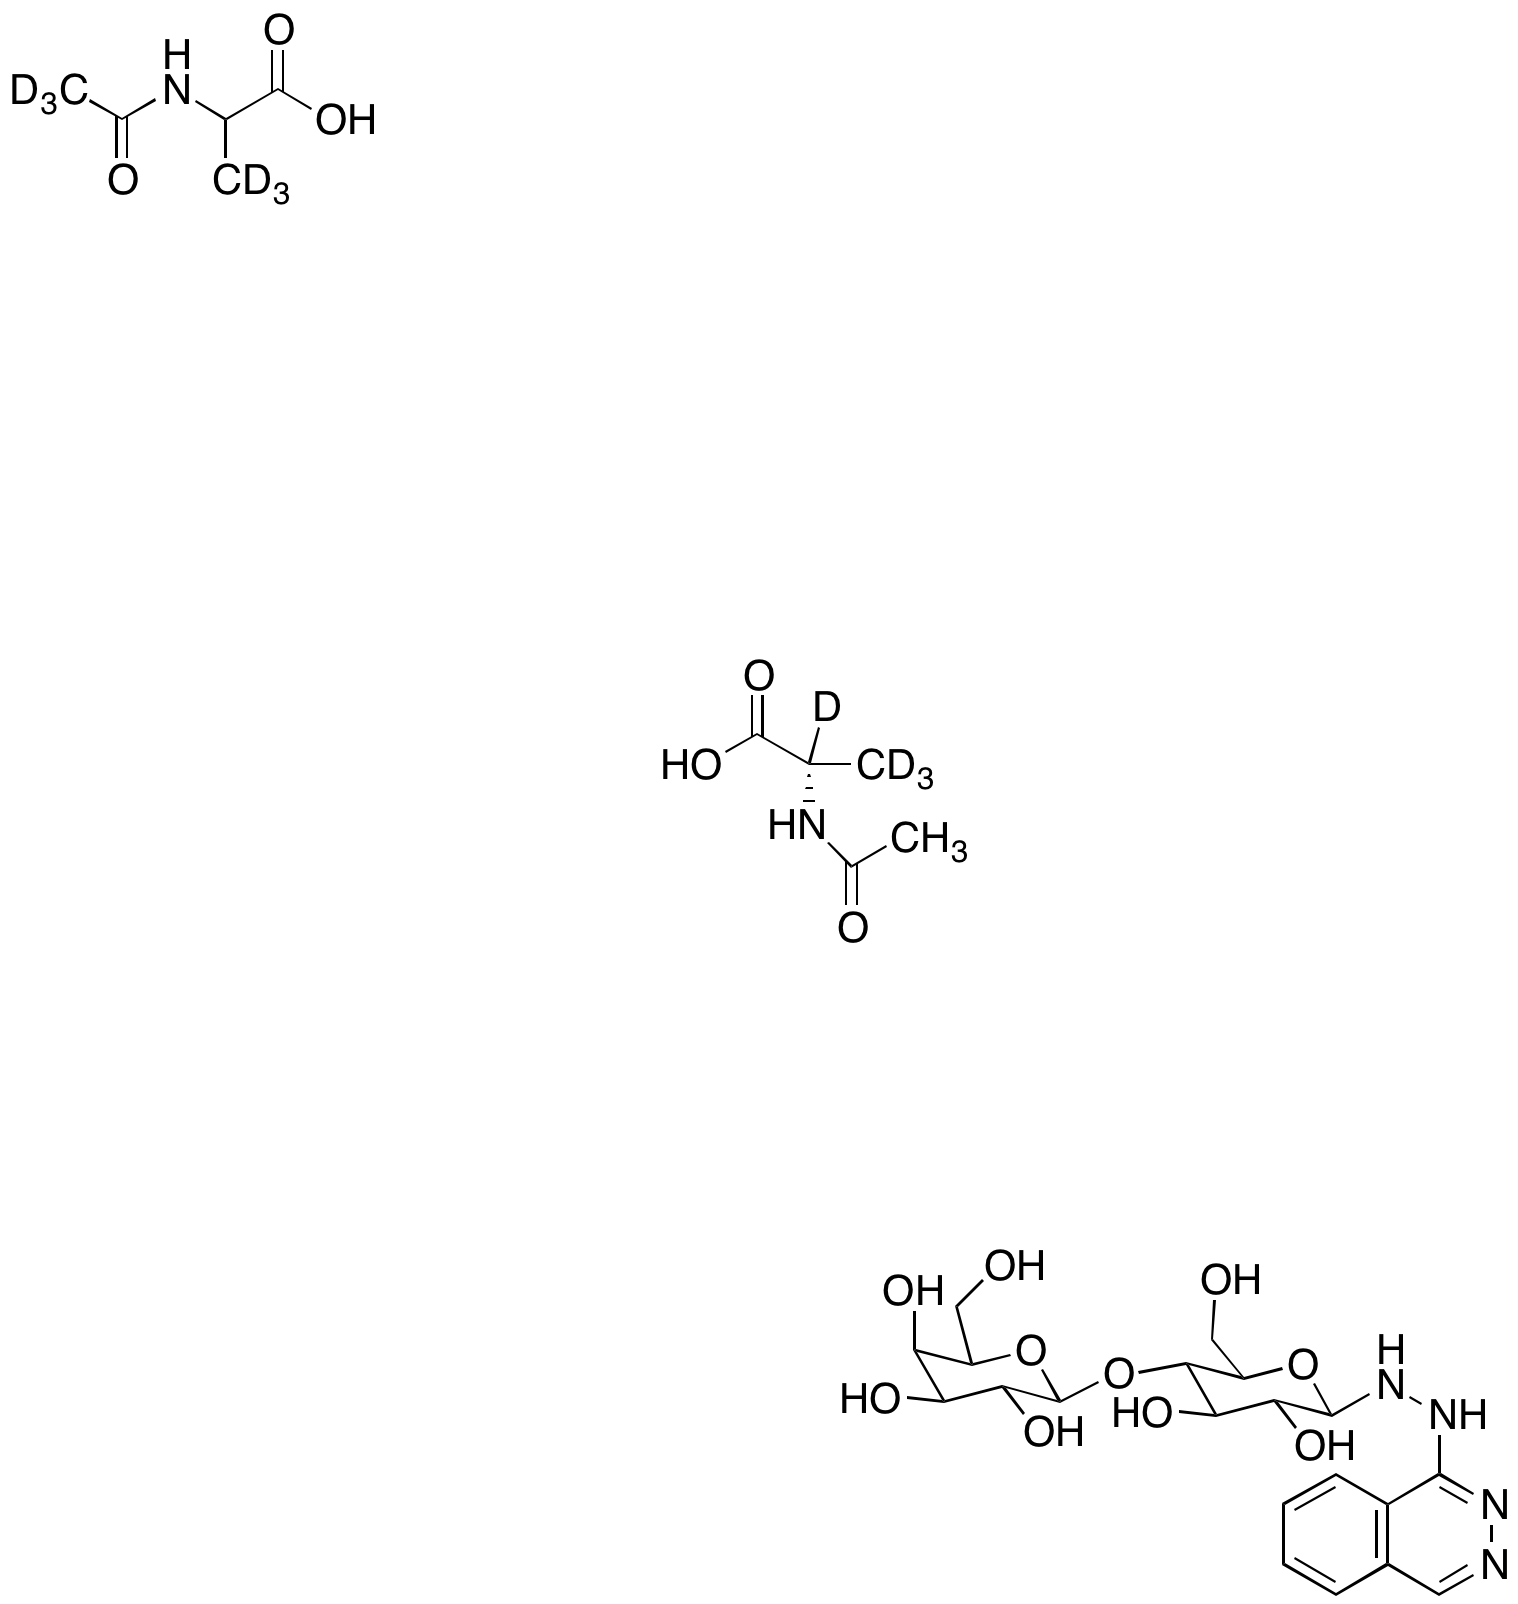 N-Acetyl-d3-DL-alanine-3,3,3-d3